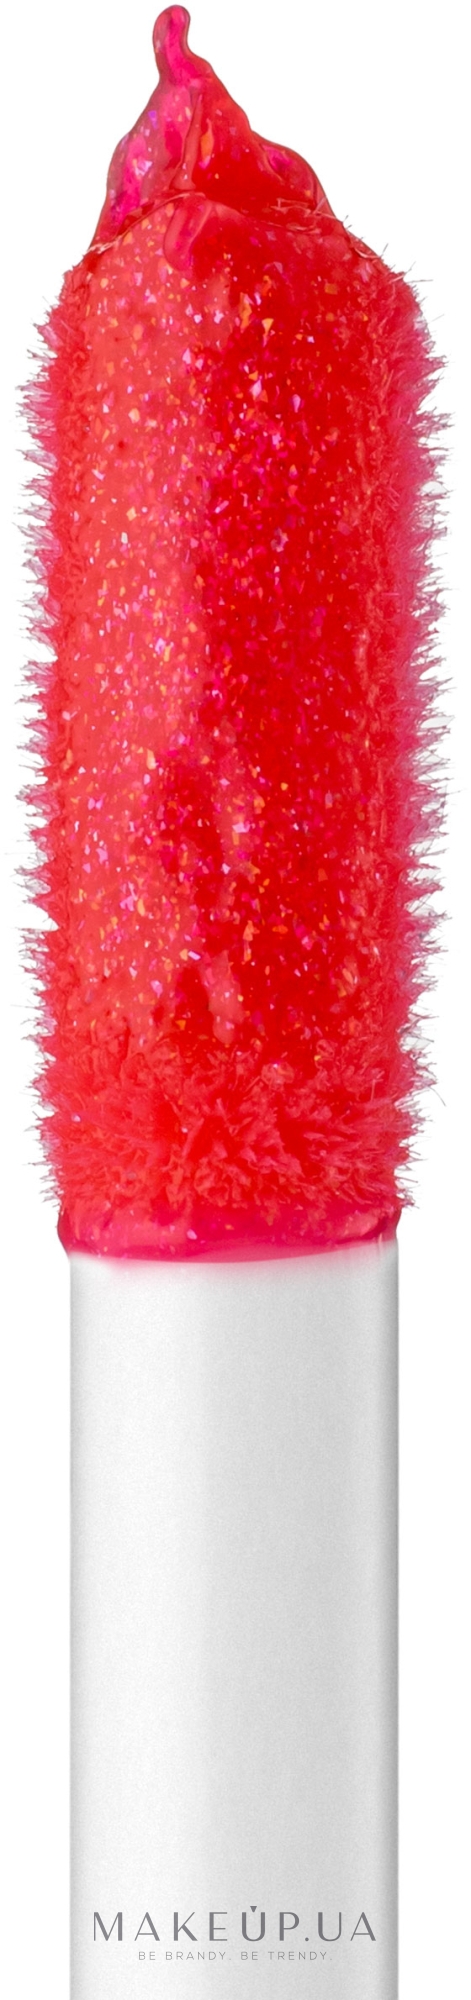 Блиск для губ з ефектом глазурі - Pupa Glossy Lips (тестер без коробки) — фото 402 - Coral Constellation